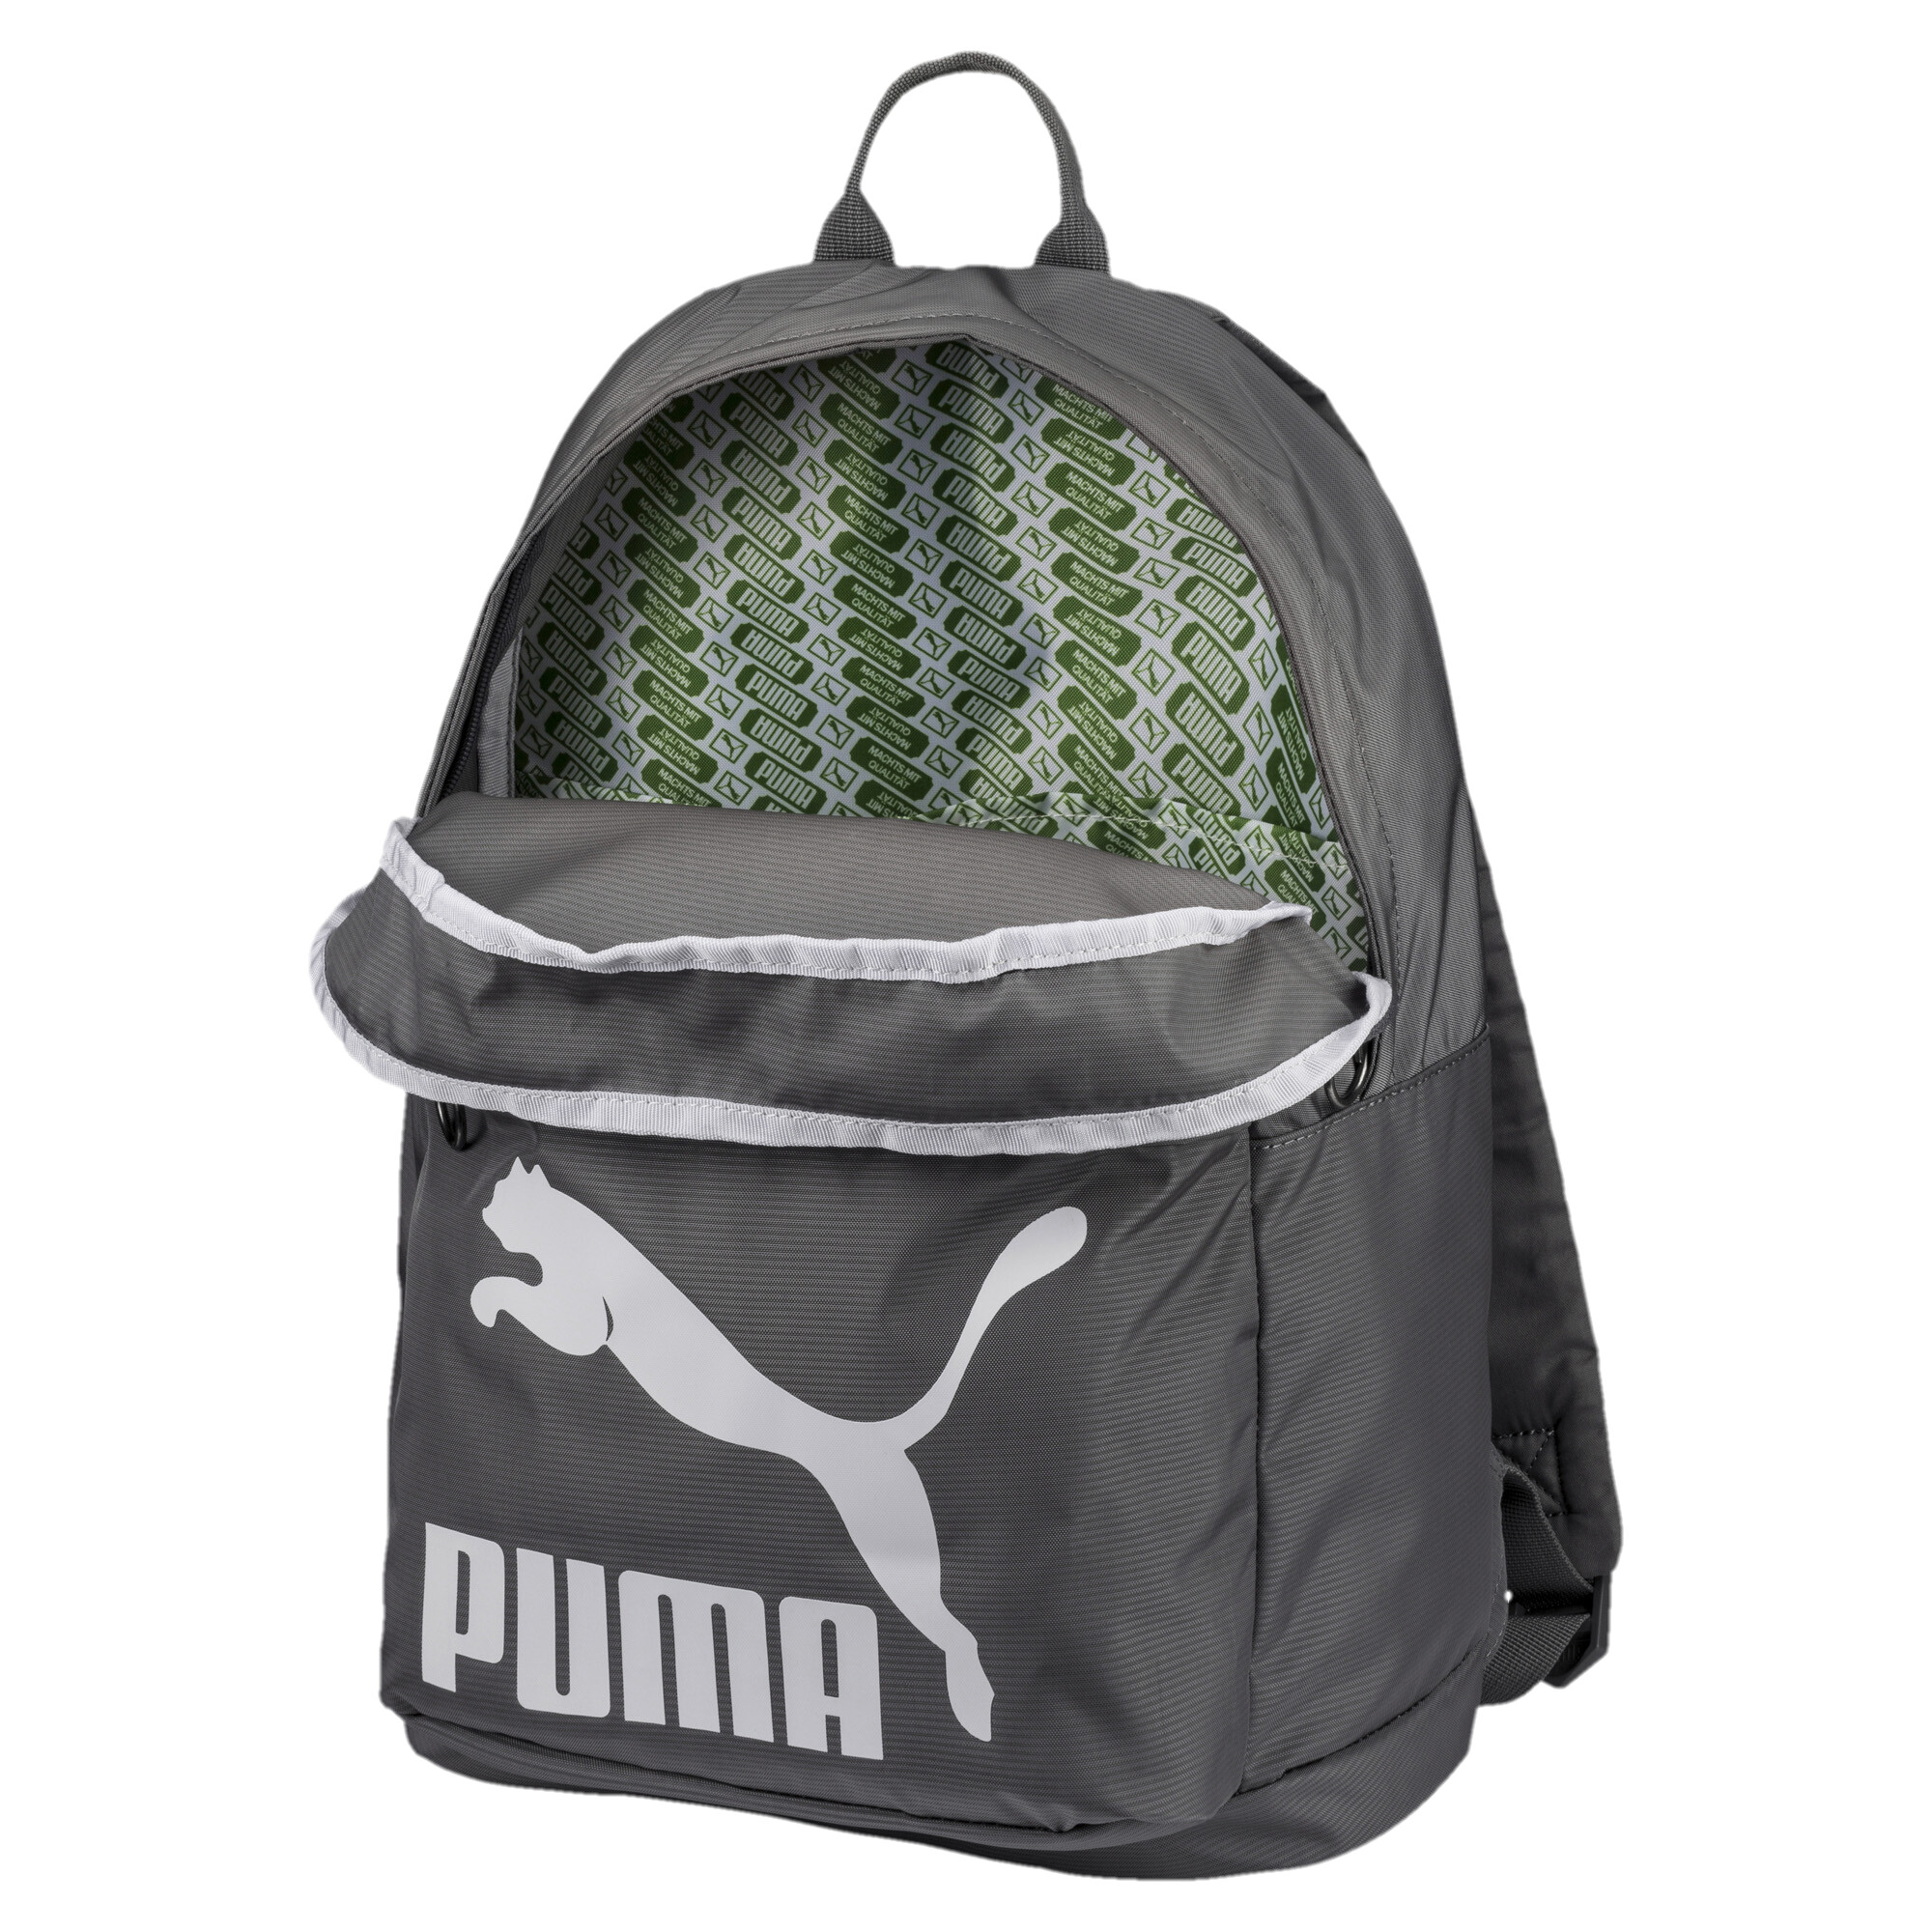 Men's Puma Originals Backpack, Gray, Accessories